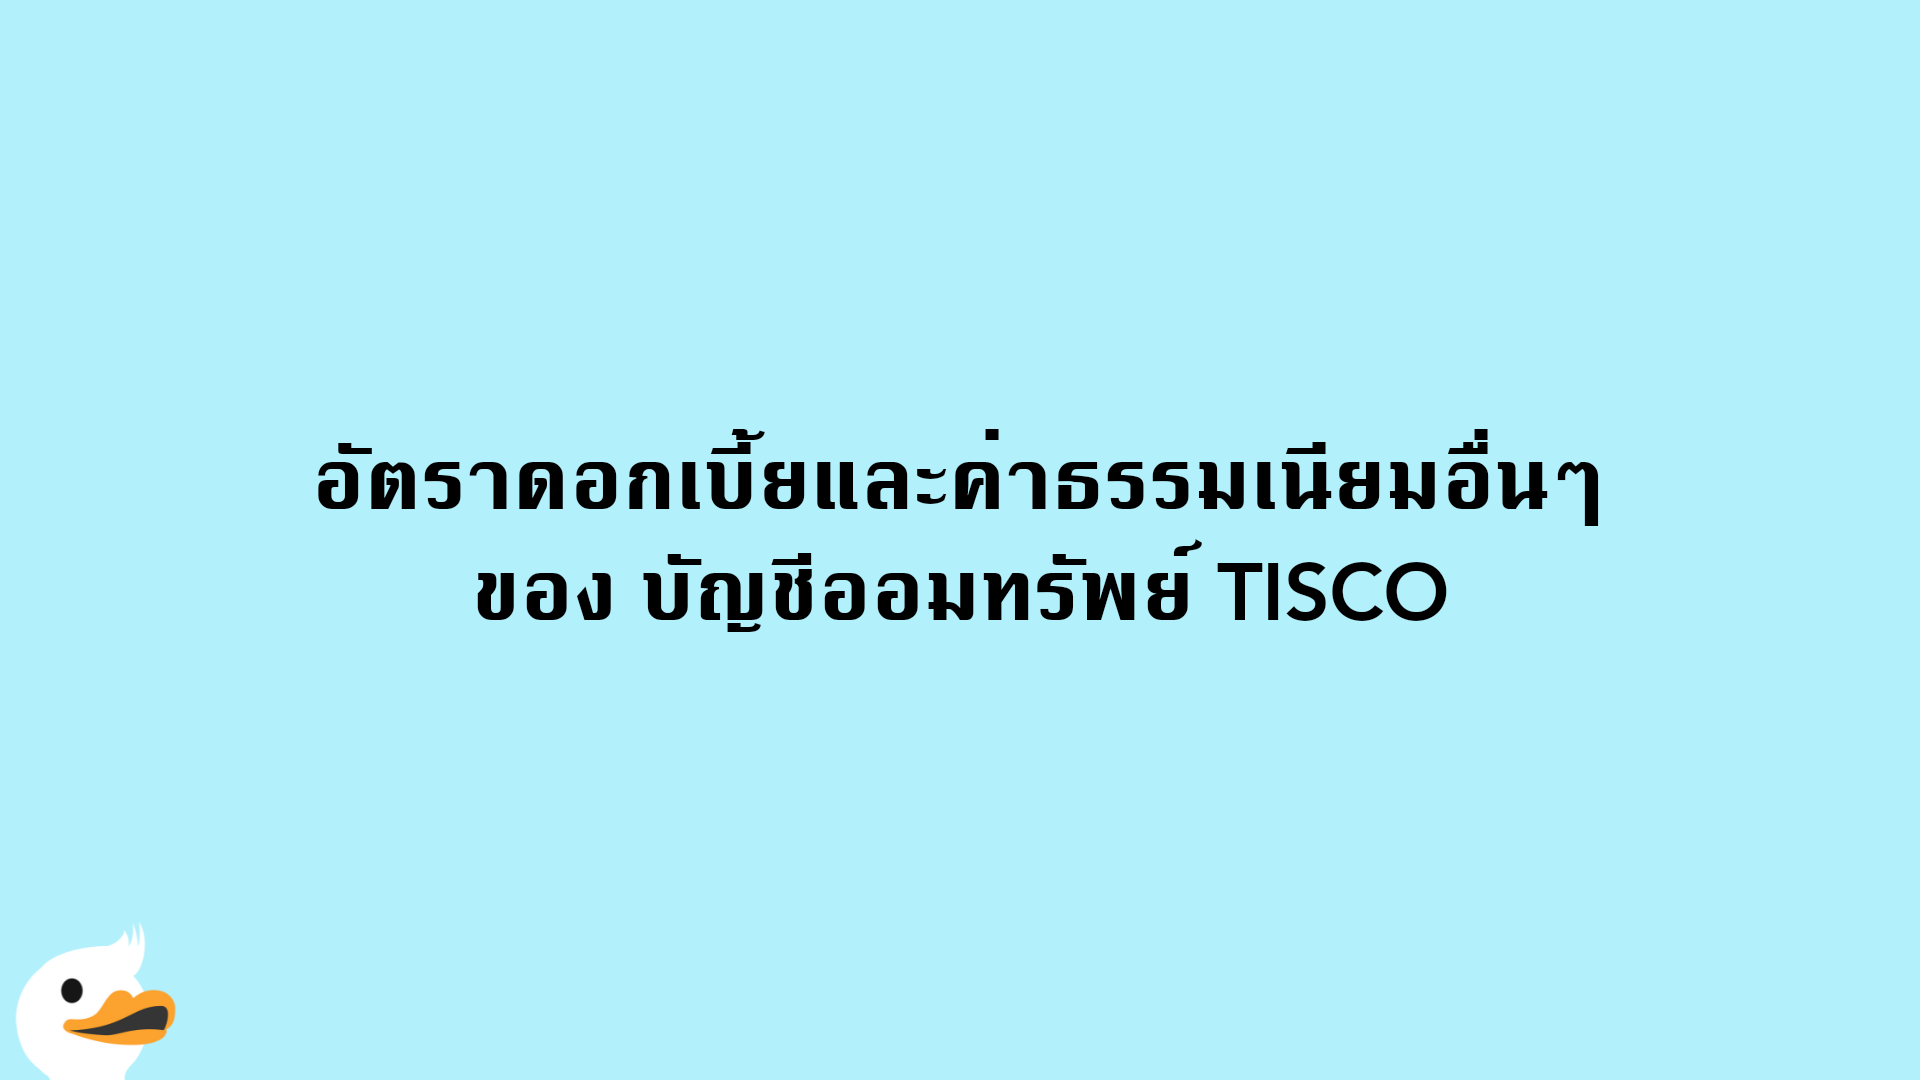 อัตราดอกเบี้ยและค่าธรรมเนียมอื่นๆ ของ บัญชีออมทรัพย์ TISCO